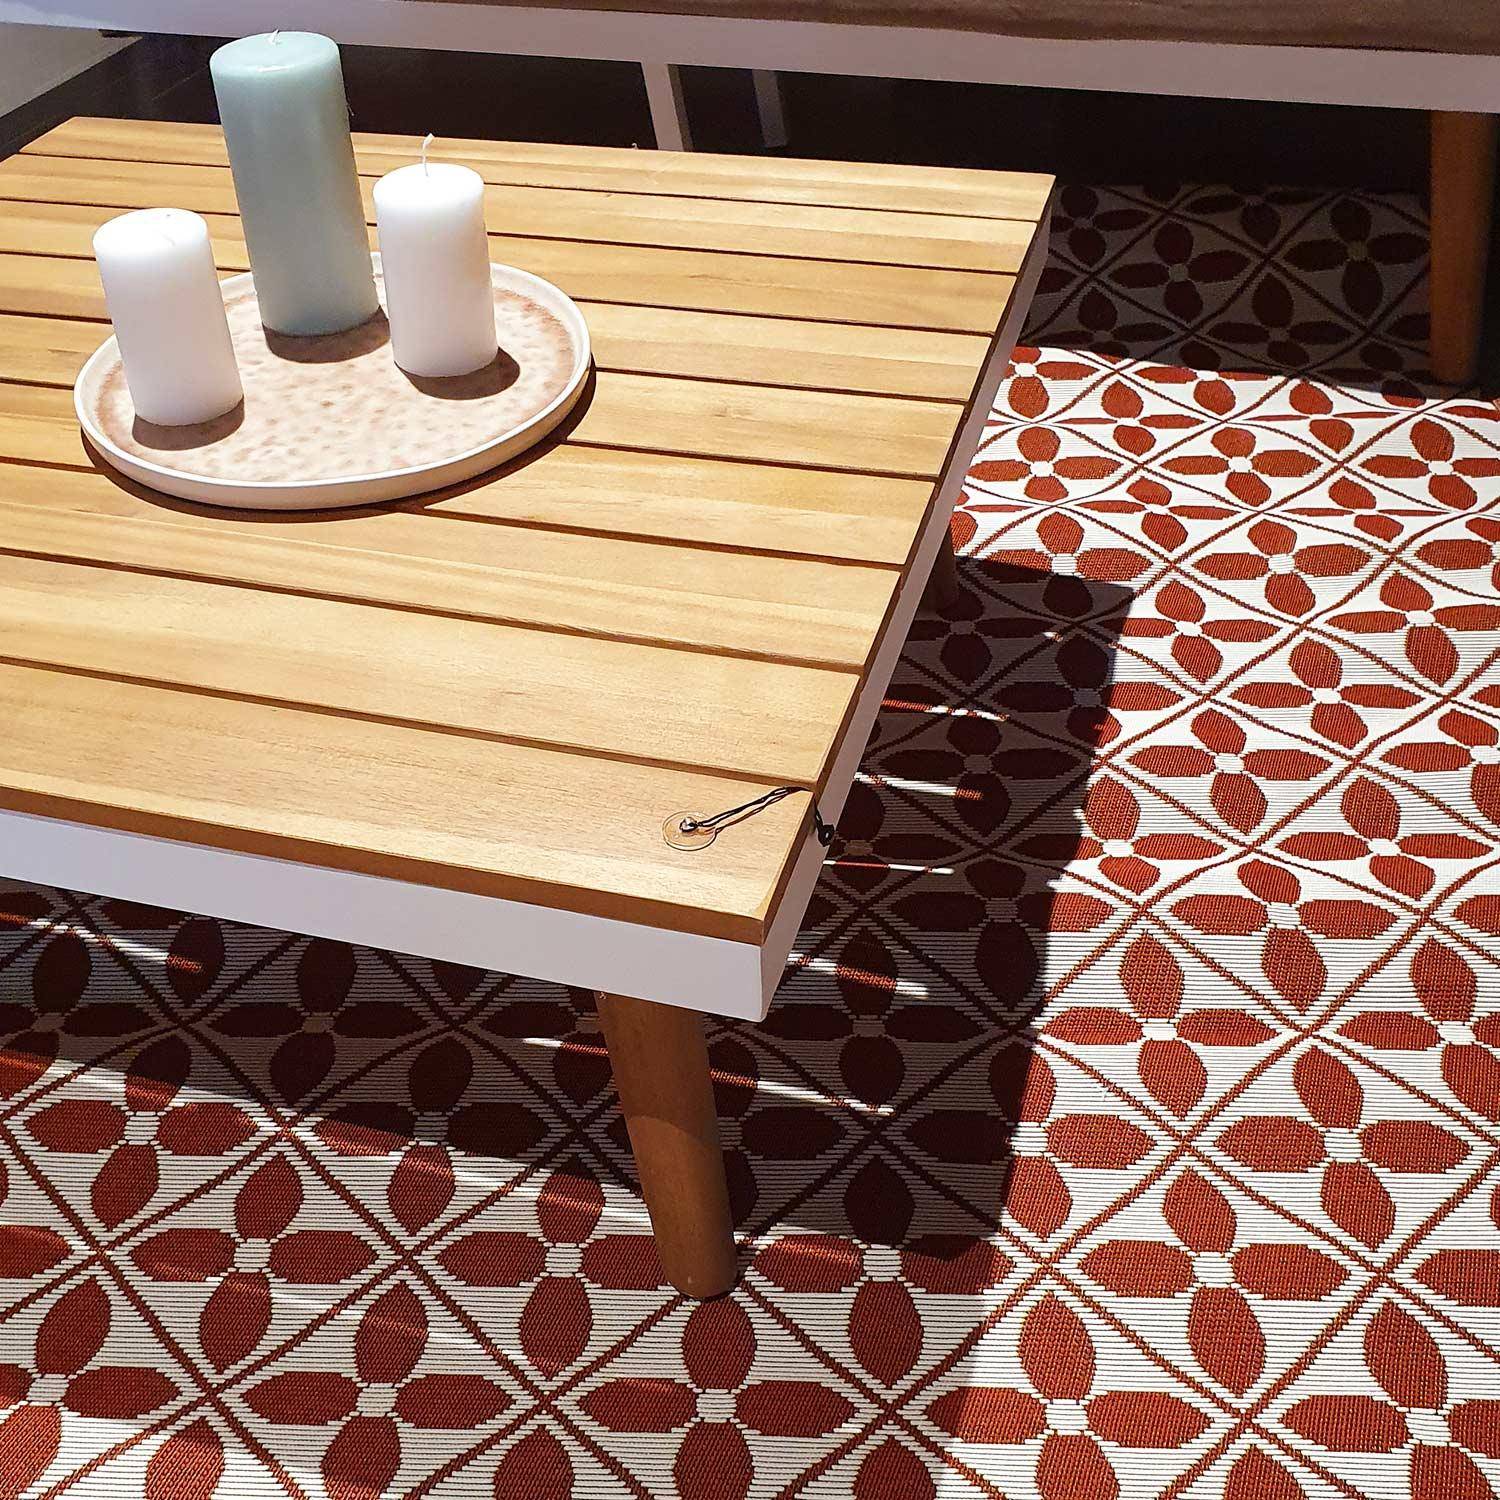 Outdoor rug - 200x290cm - tile print, rectangular, indoor/outdoor use - Terracotta Photo2